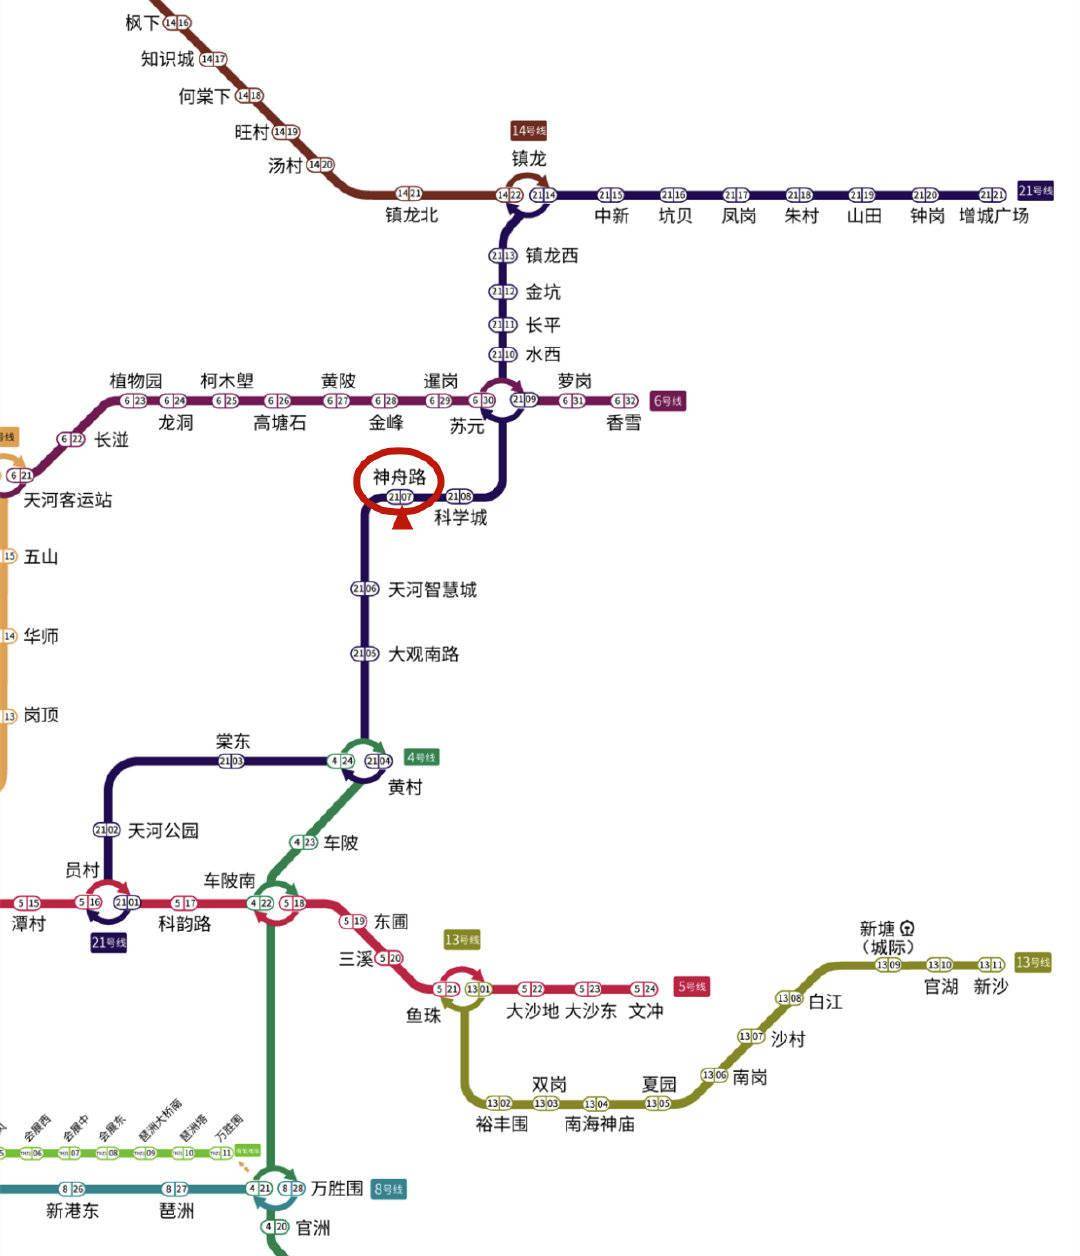 广州地铁21号线神舟路站暂停运营服务